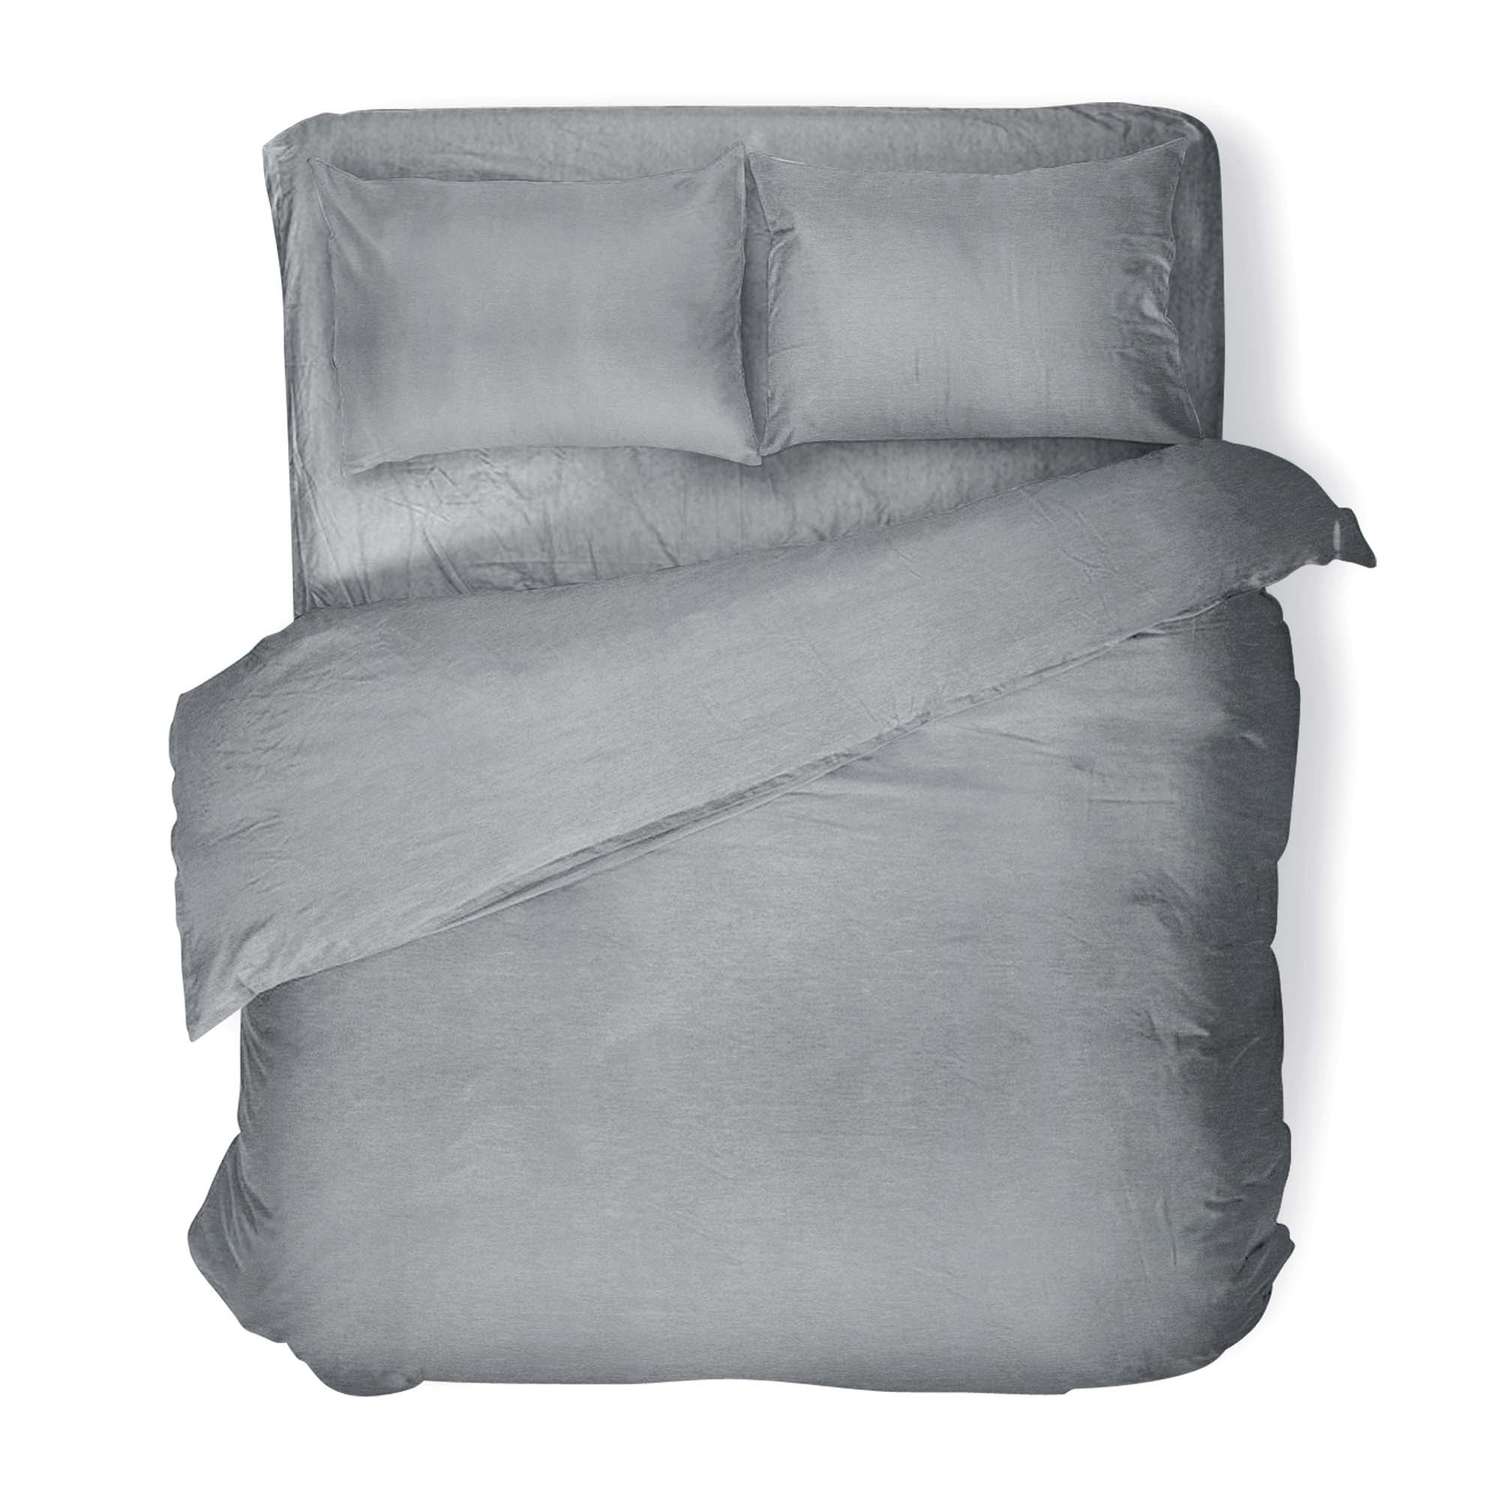 Комплект постельного белья Absolut 1.5СП Silver наволочки 50х70 меланж - фото 1